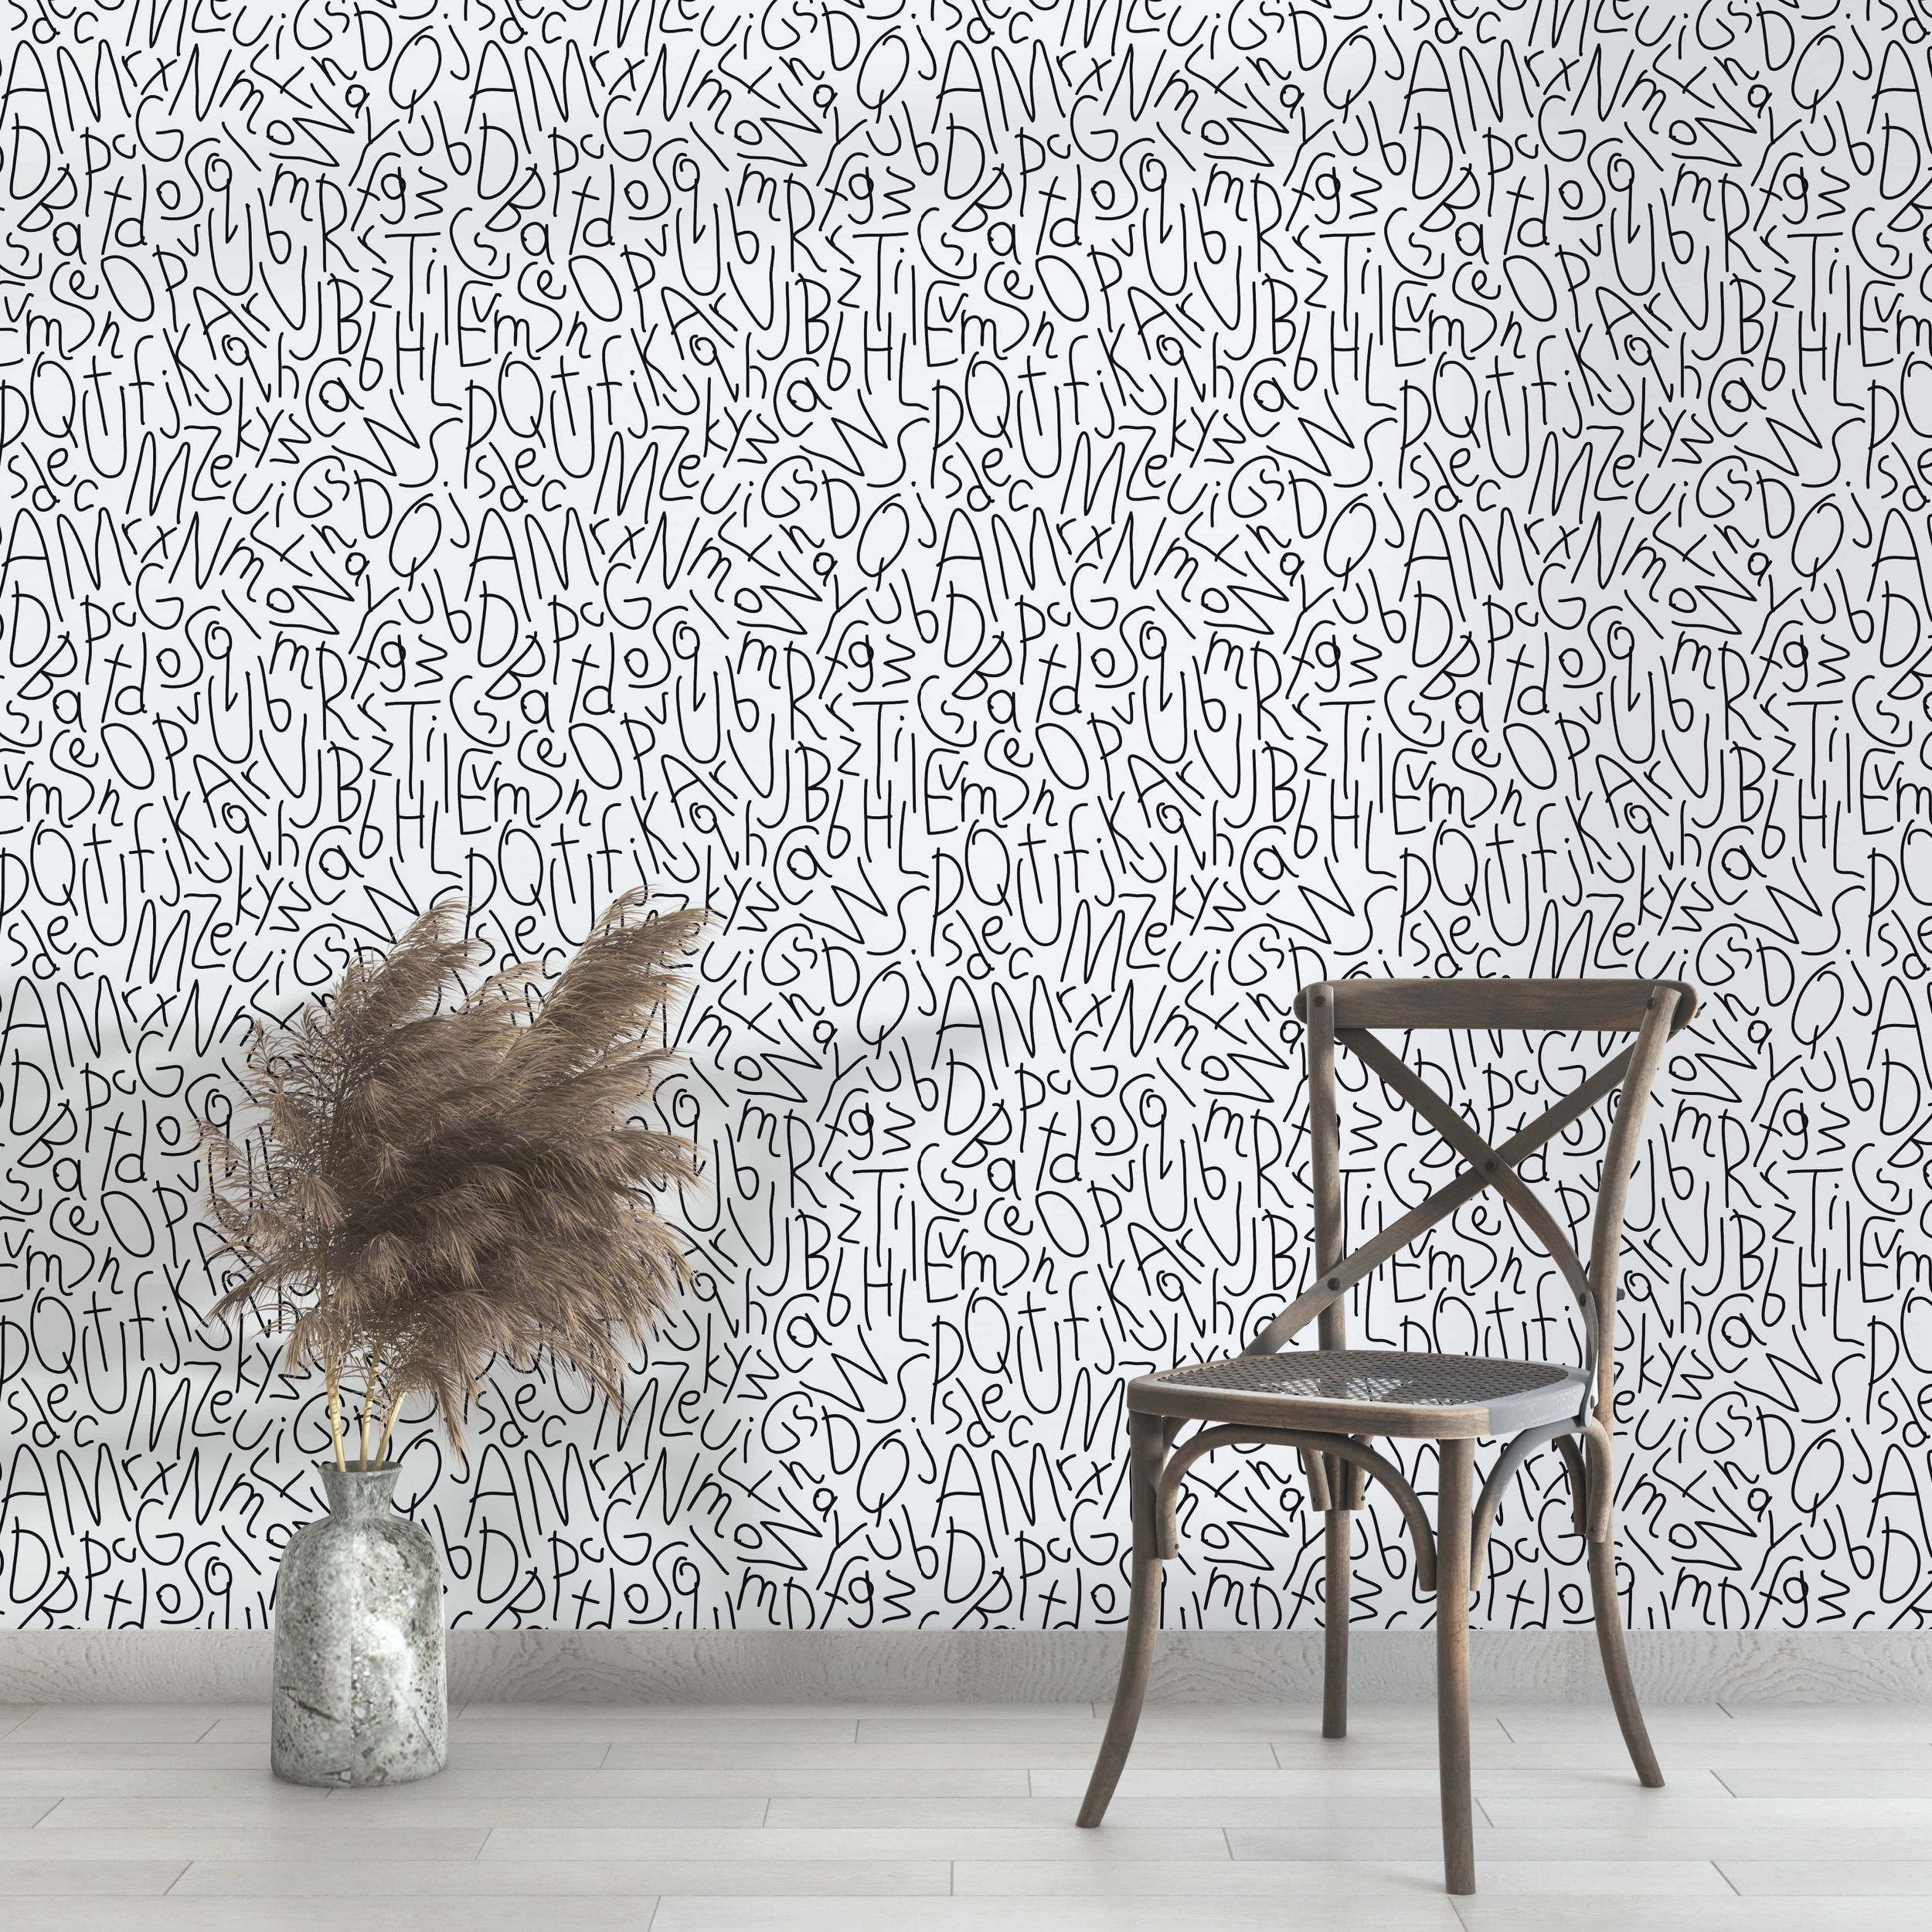 PP33-papier-peint-adhesif-decoratif-revetement-vinyle-motifs-lettres-courbées-black-and-white-renovation-meuble-mur-4